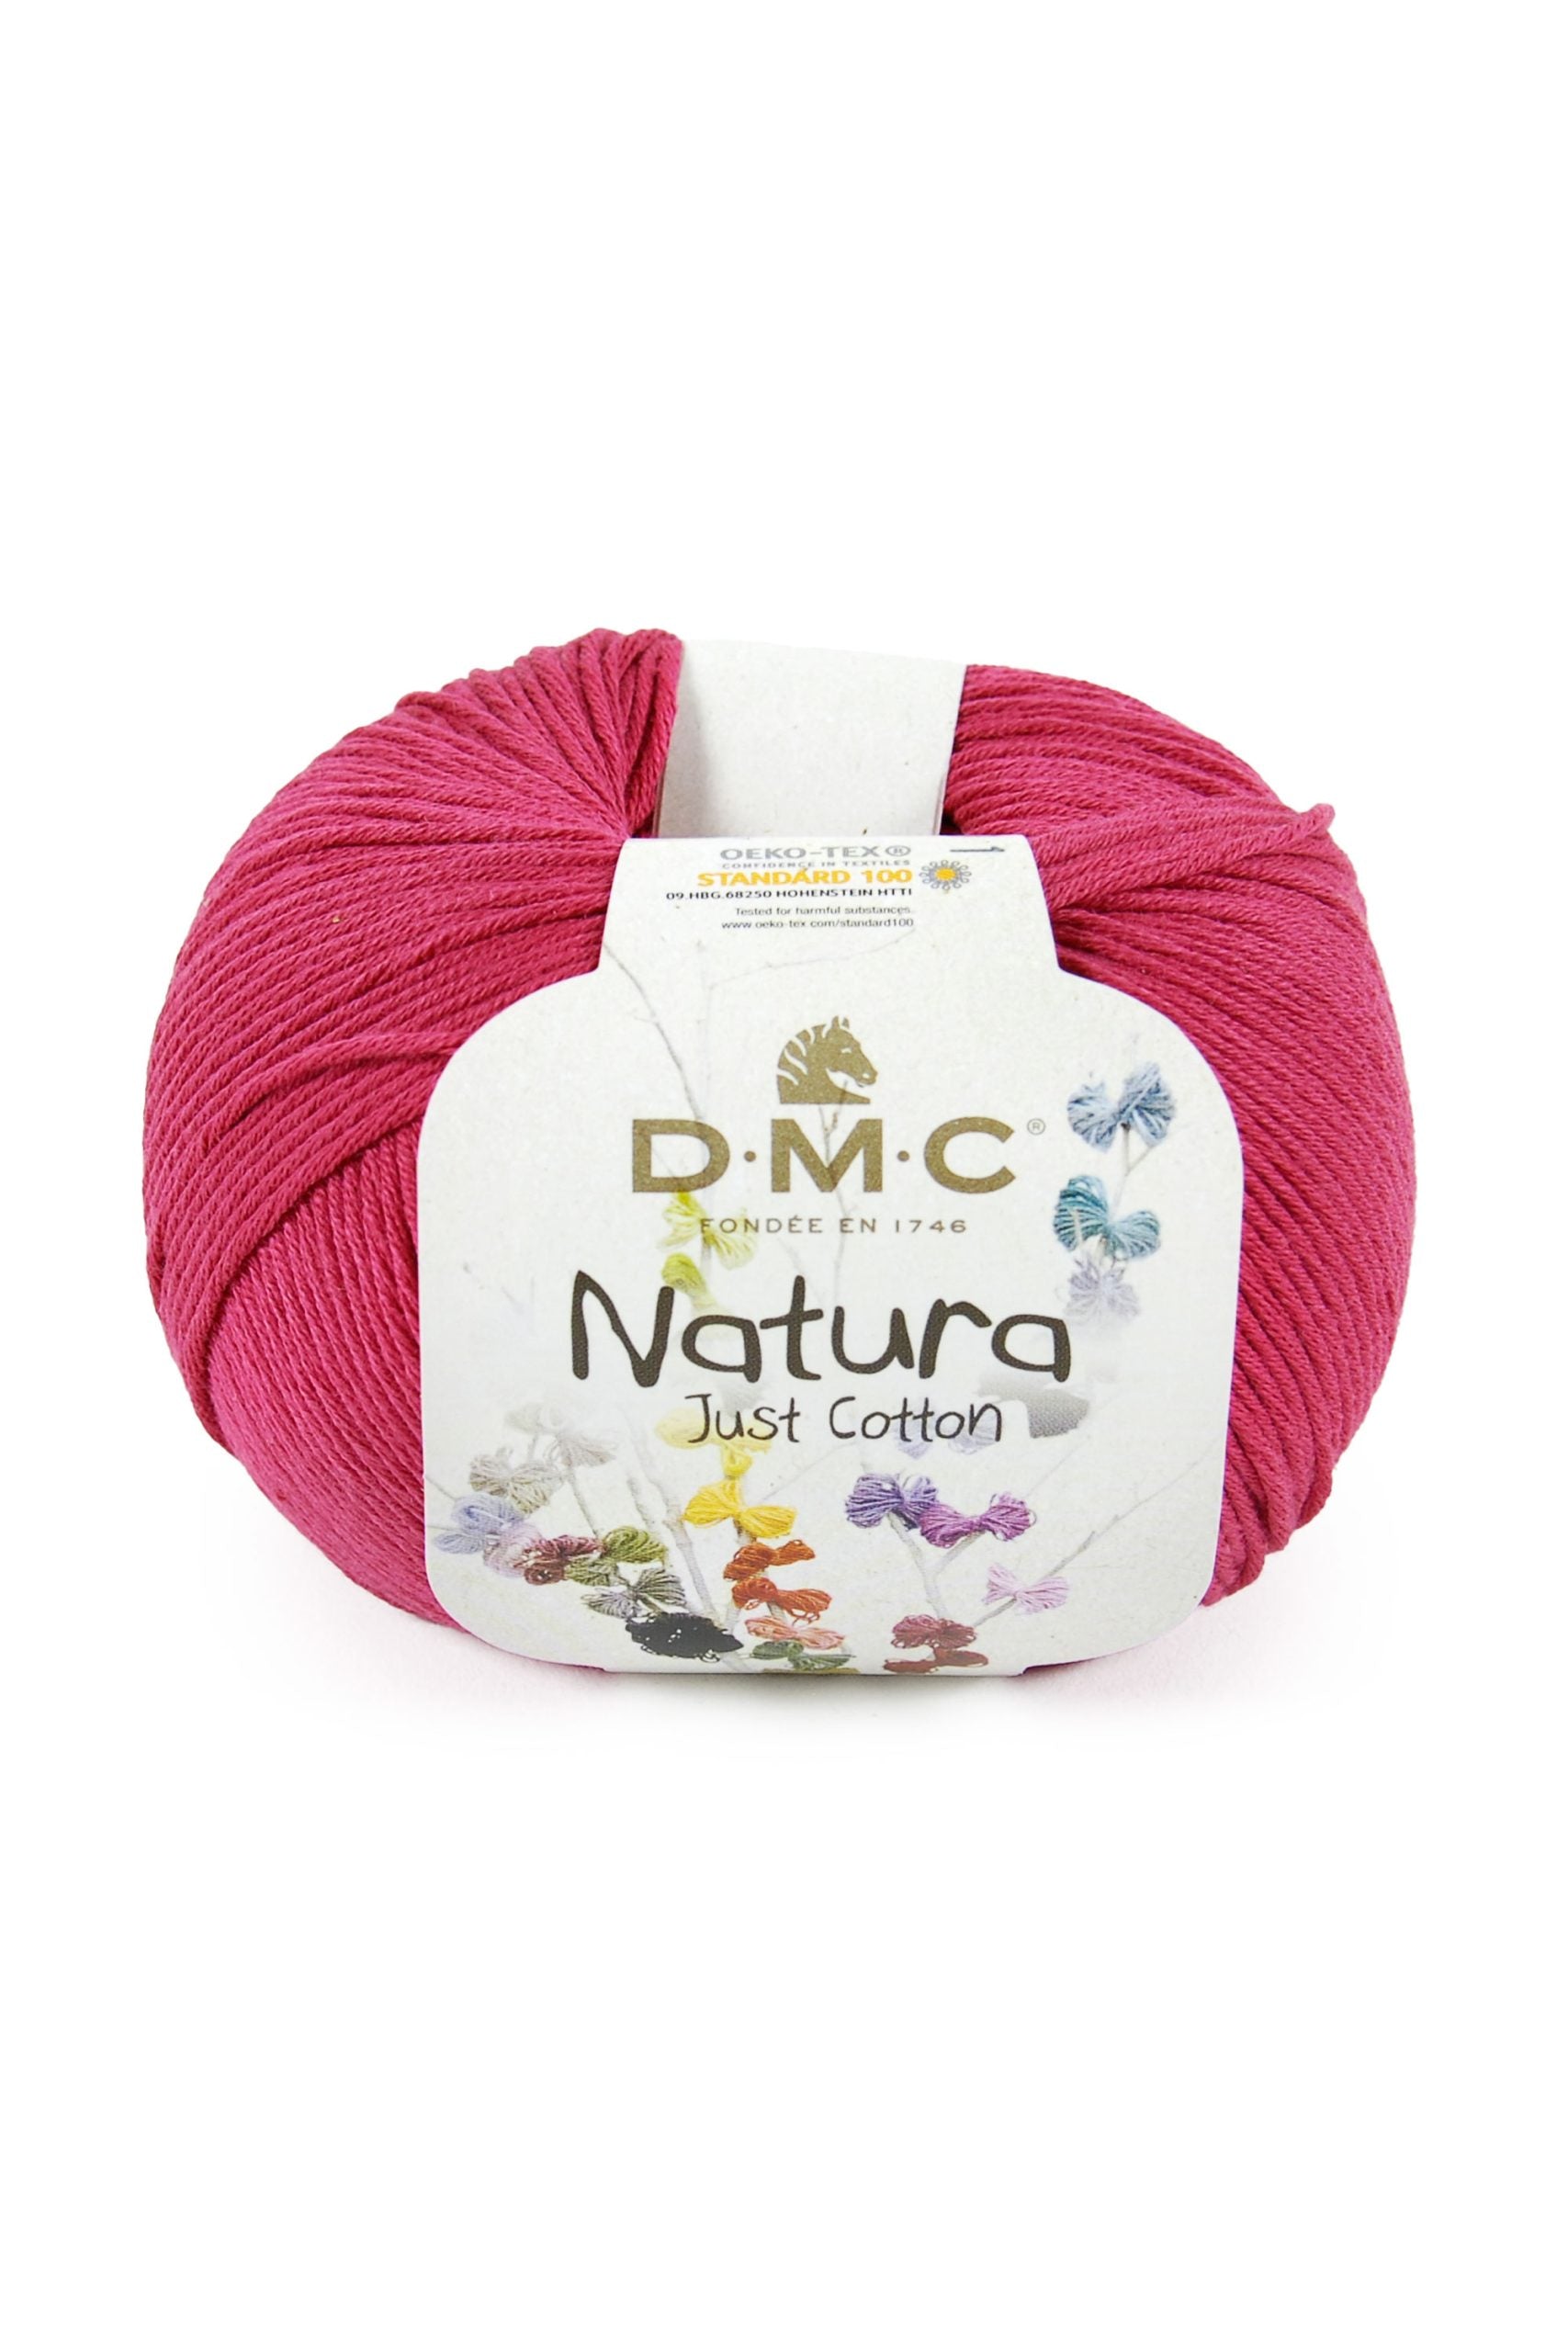 Cotone Dmc Natura Just Cotton Colore N61